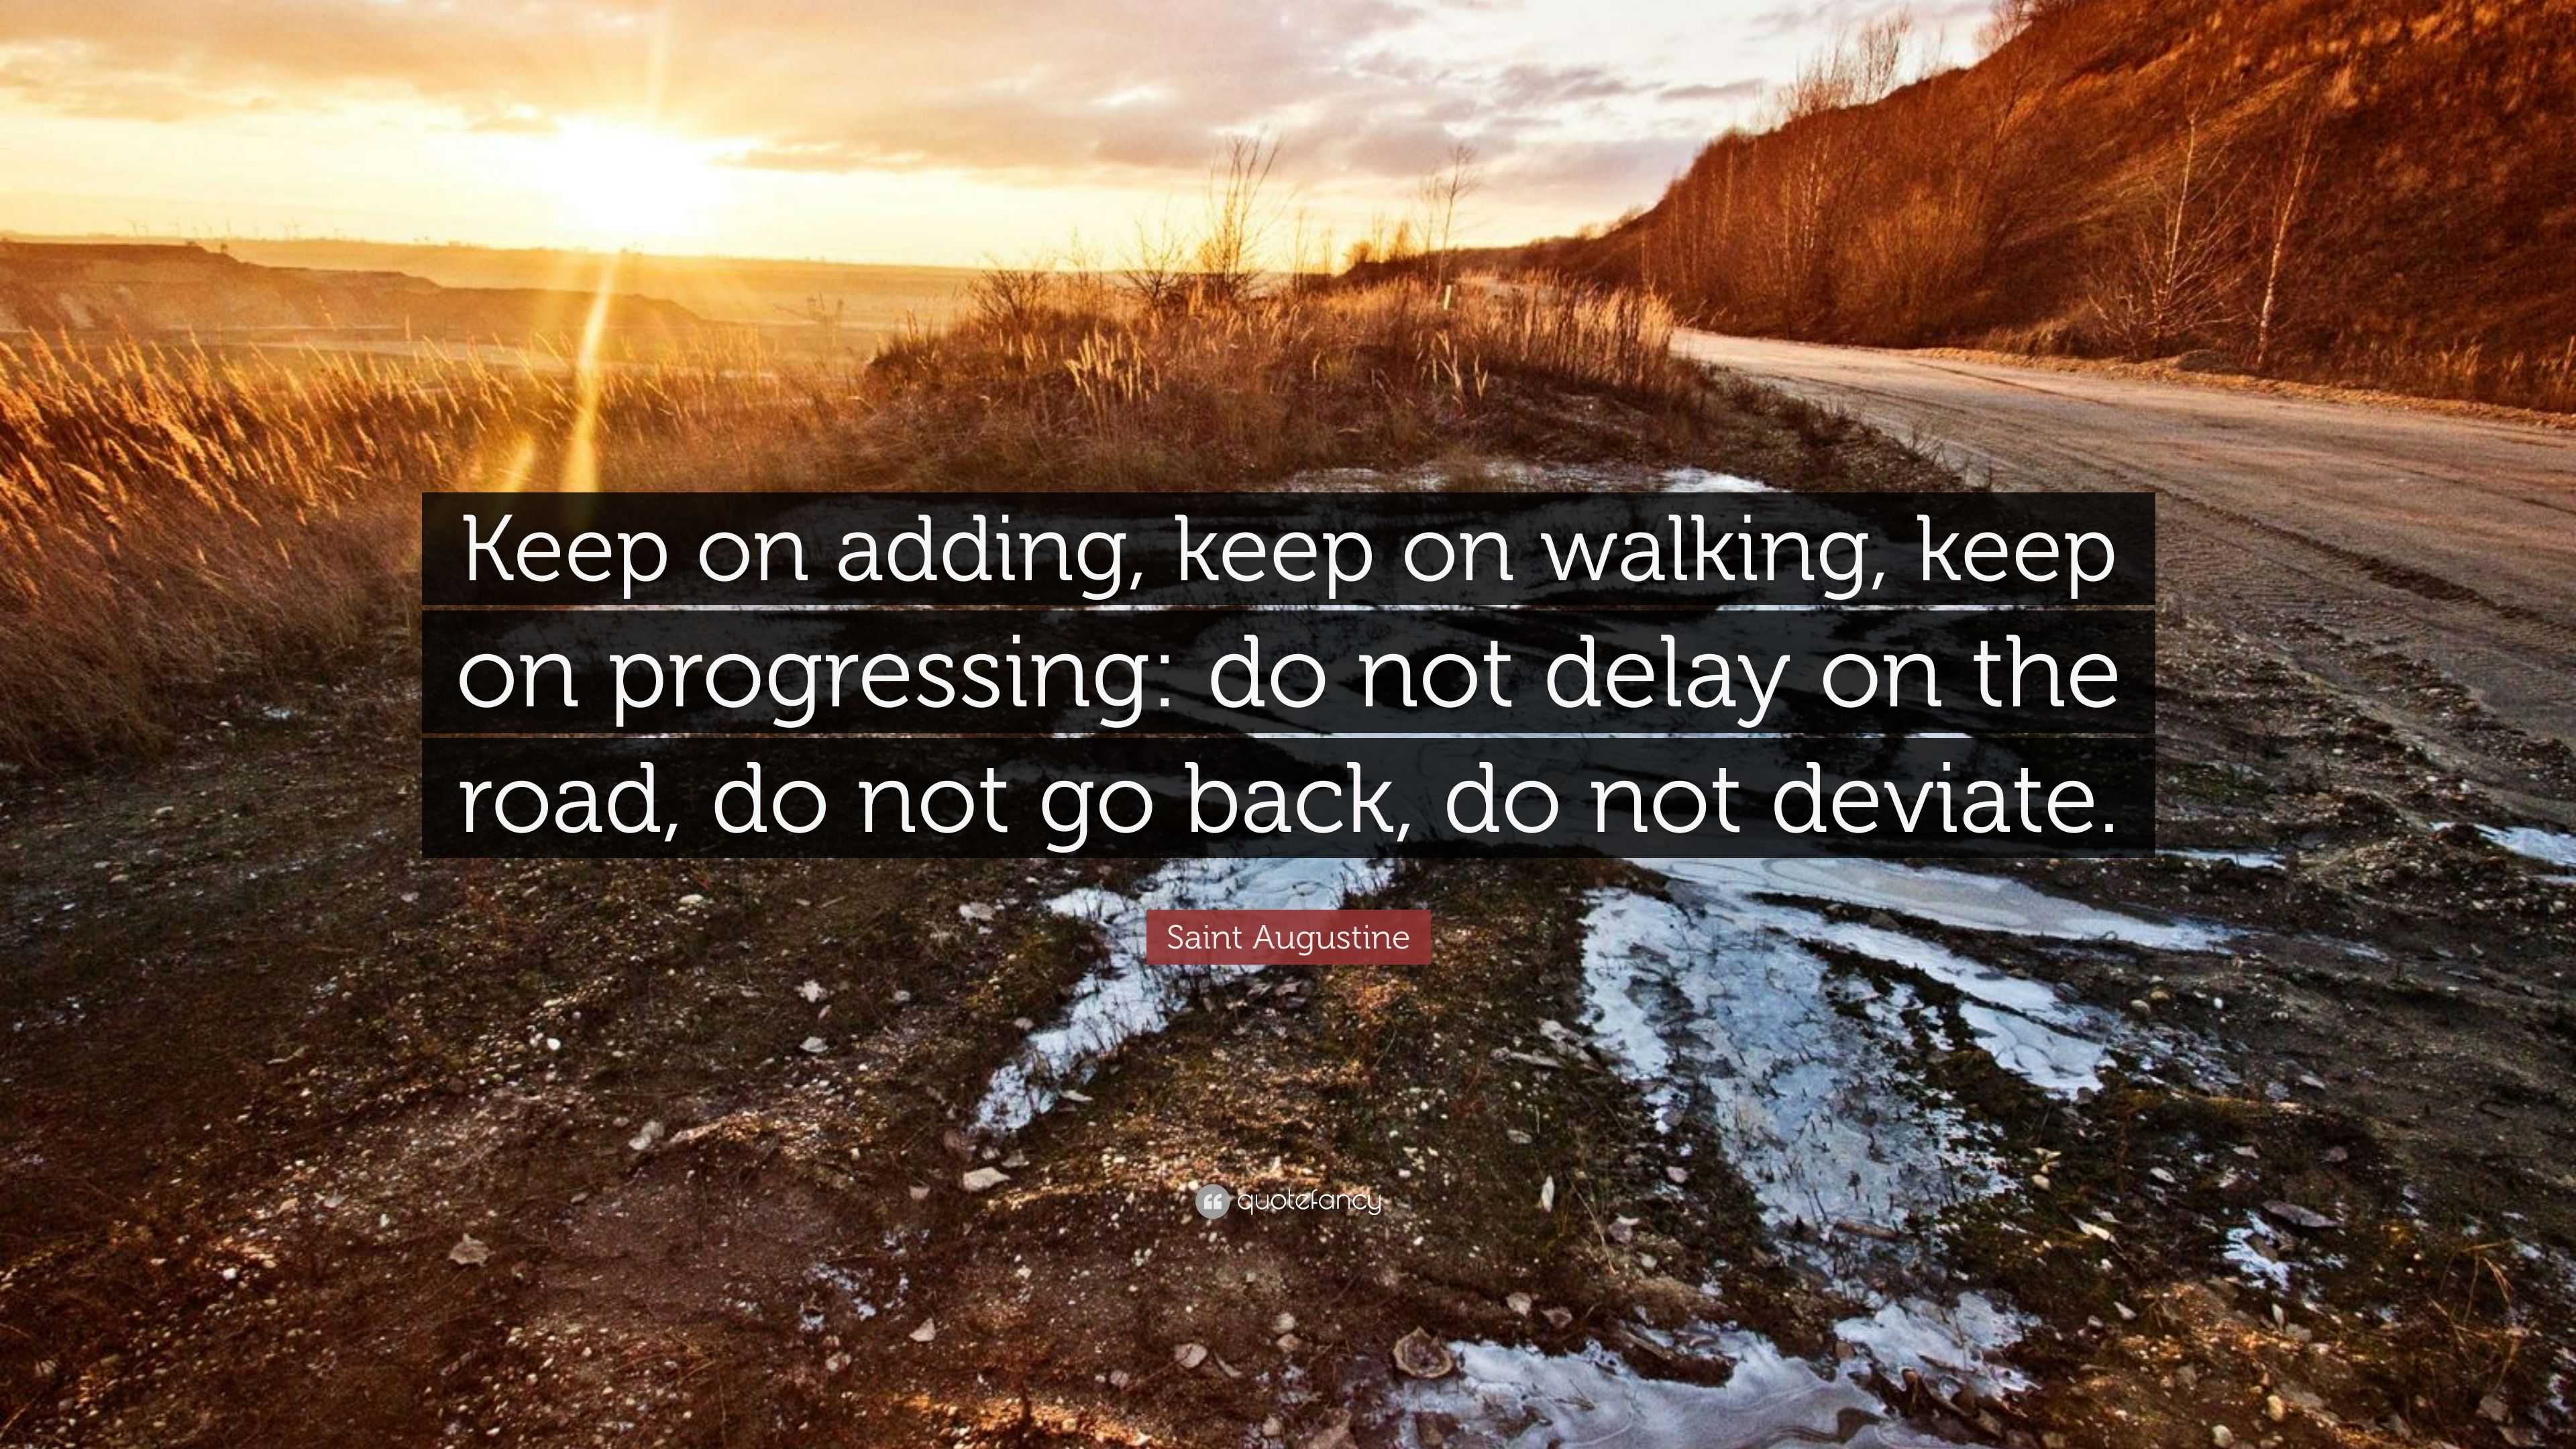 Saint Augustine Quote: “Keep on adding, keep on walking, keep on ...